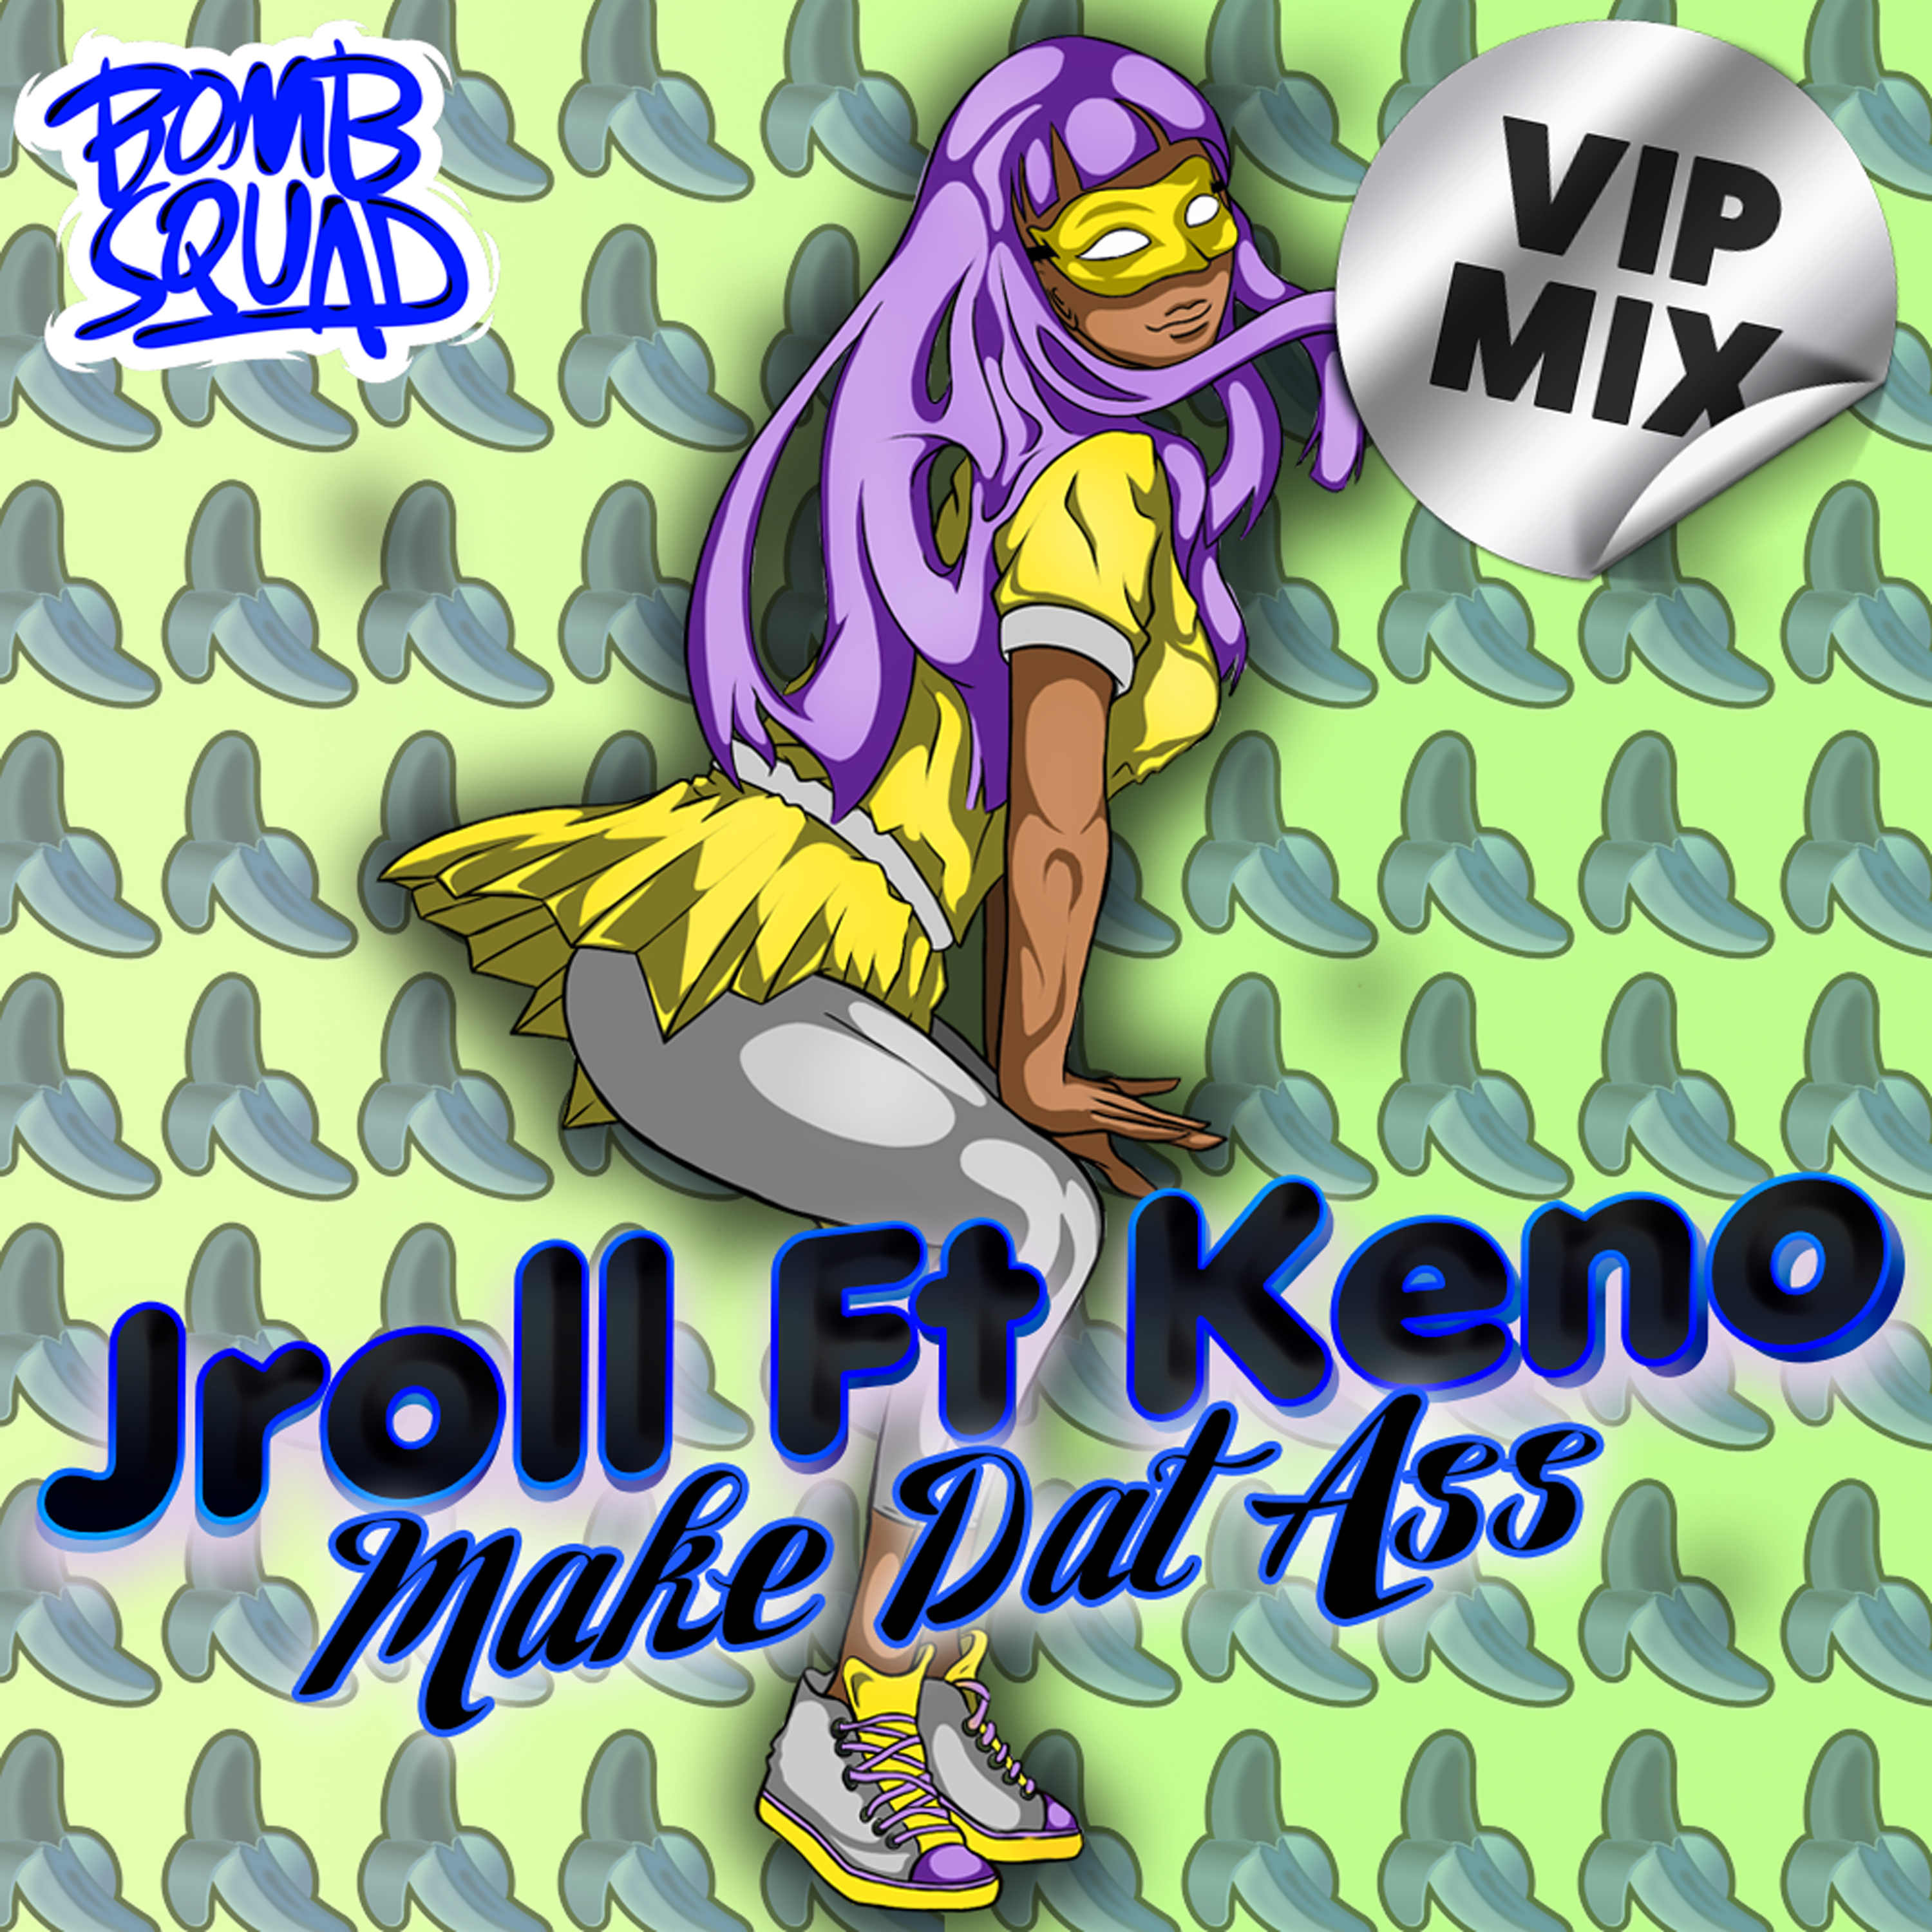 Make Dat Ass (feat. Keno) [VIP Mix]